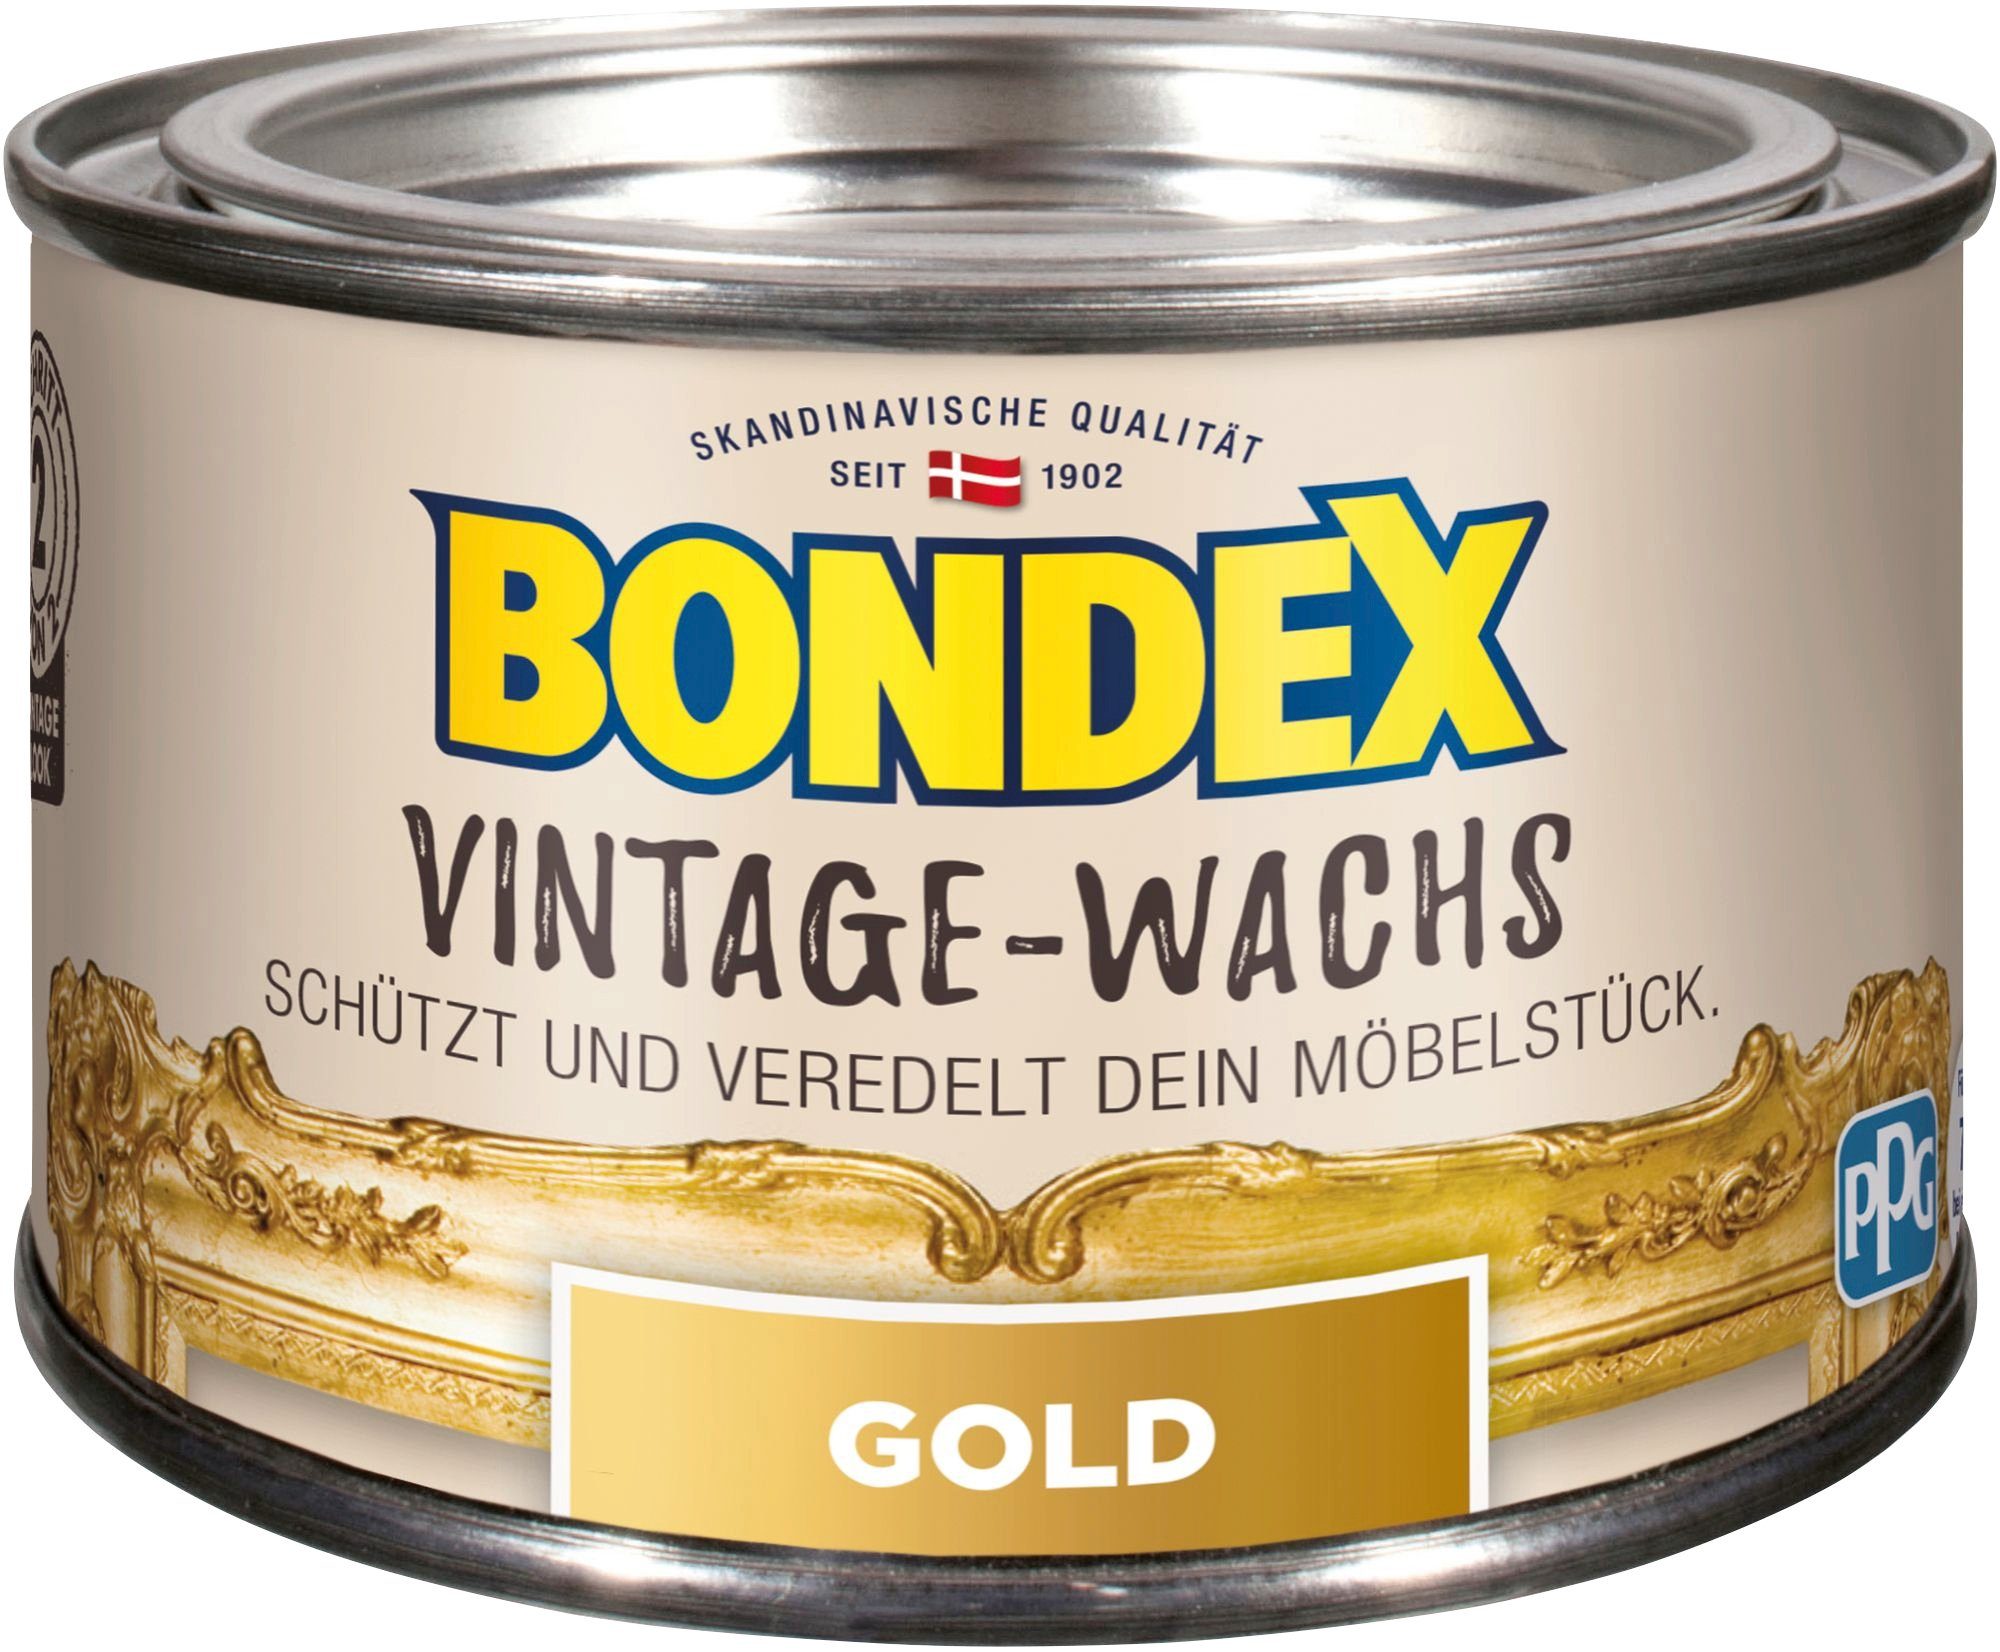 VINTAGE-WACHS Möbelstücke, Schutzwachs, l zum und 0,25 der Grau Veredelung Bondex Schutz goldfarben